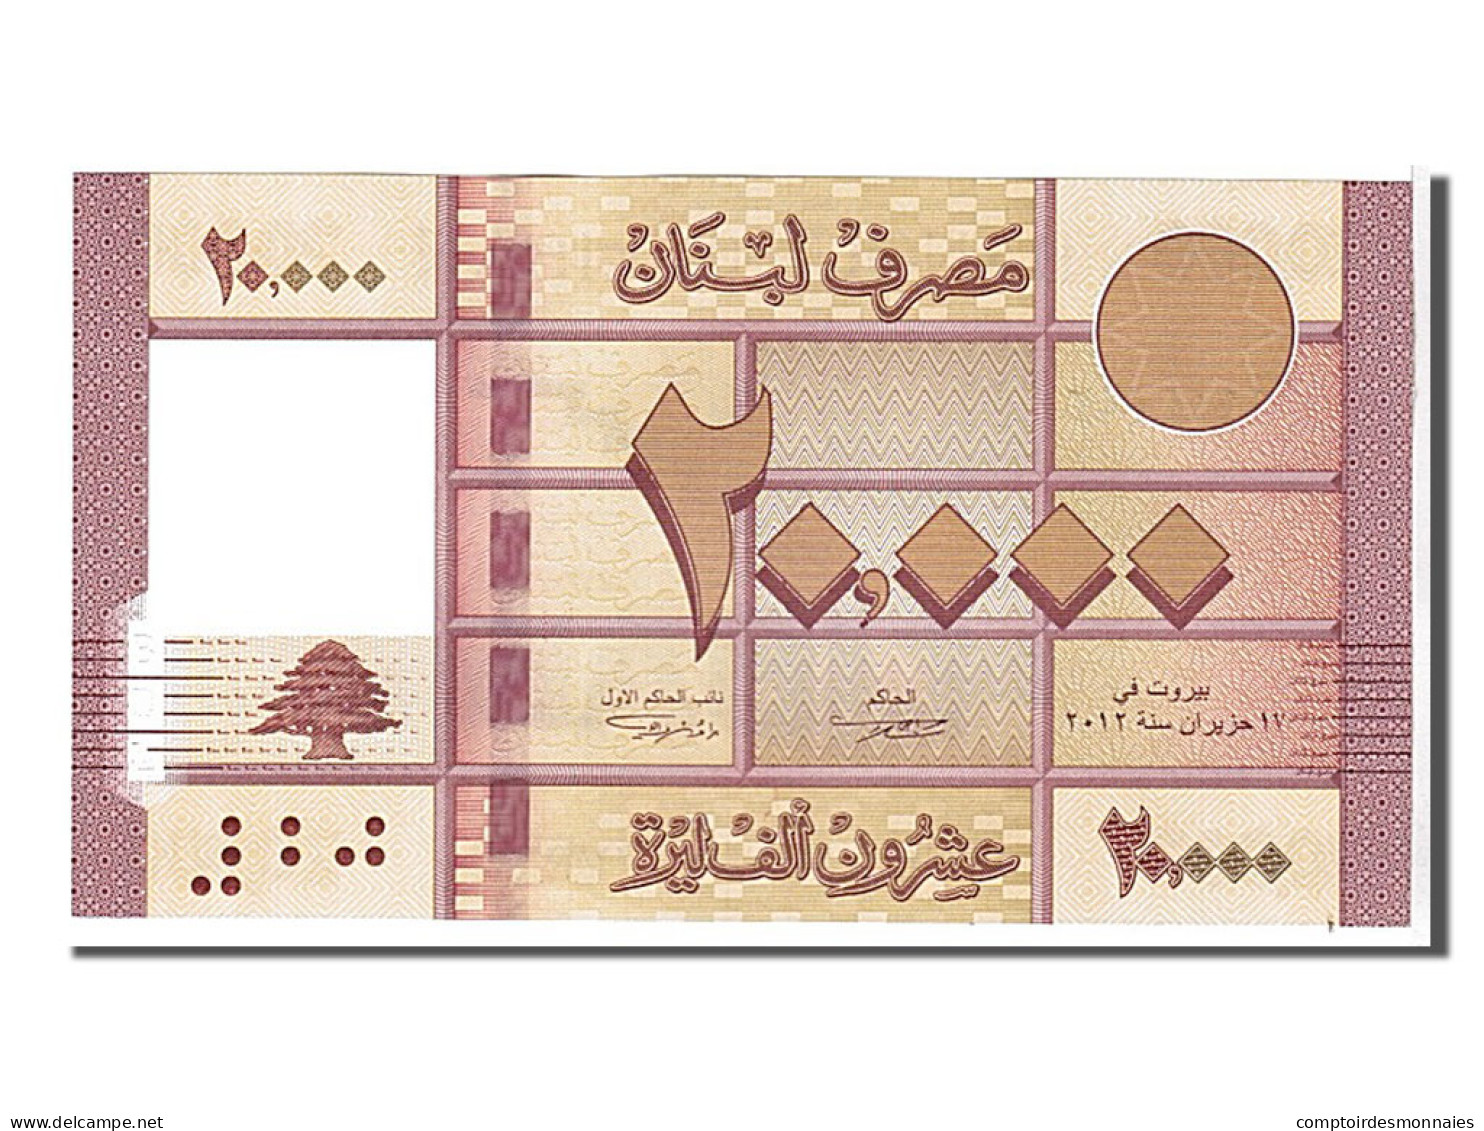 Billet, Lebanon, 20,000 Livres, 2012, NEUF - Lebanon